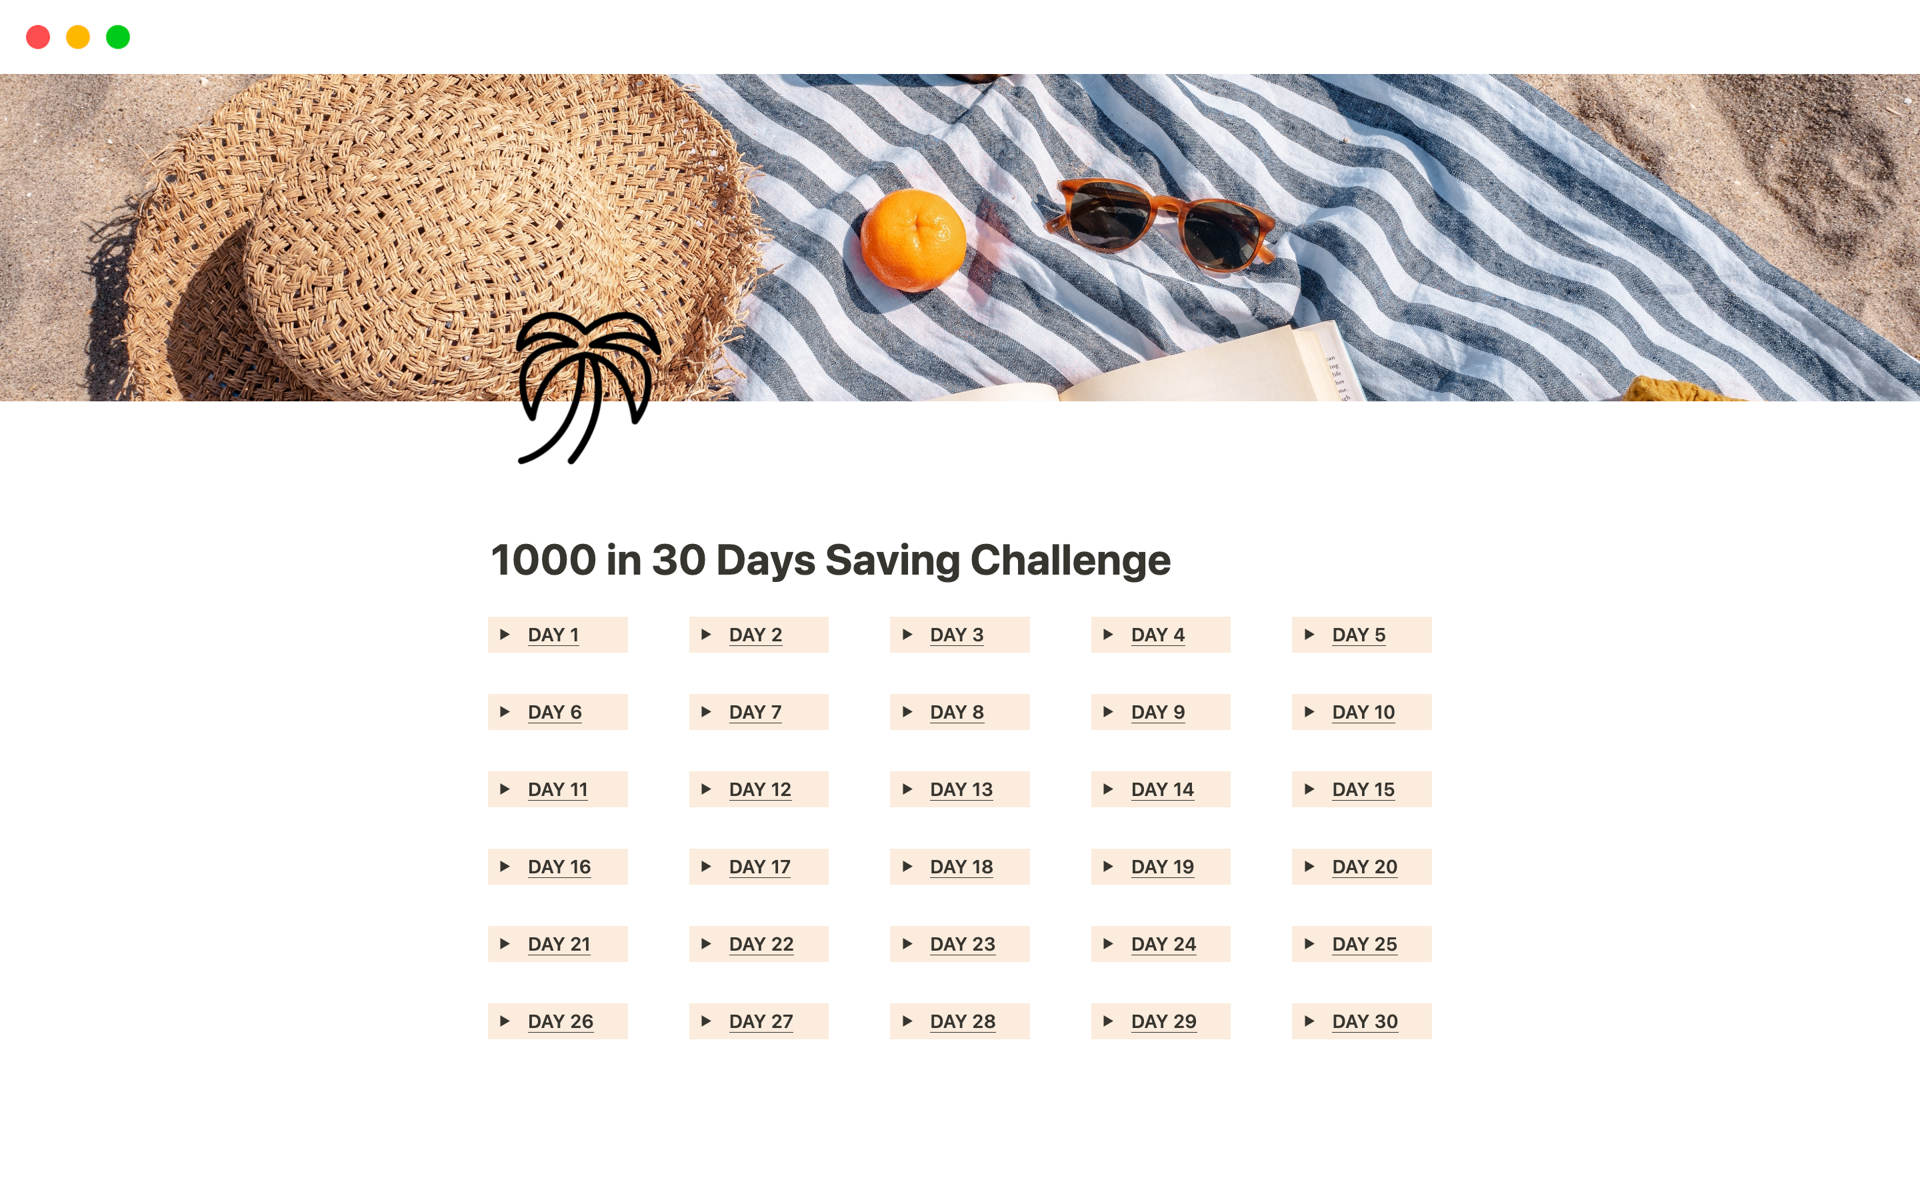 Uma prévia do modelo para 1000 in 30 Days Saving Challenge